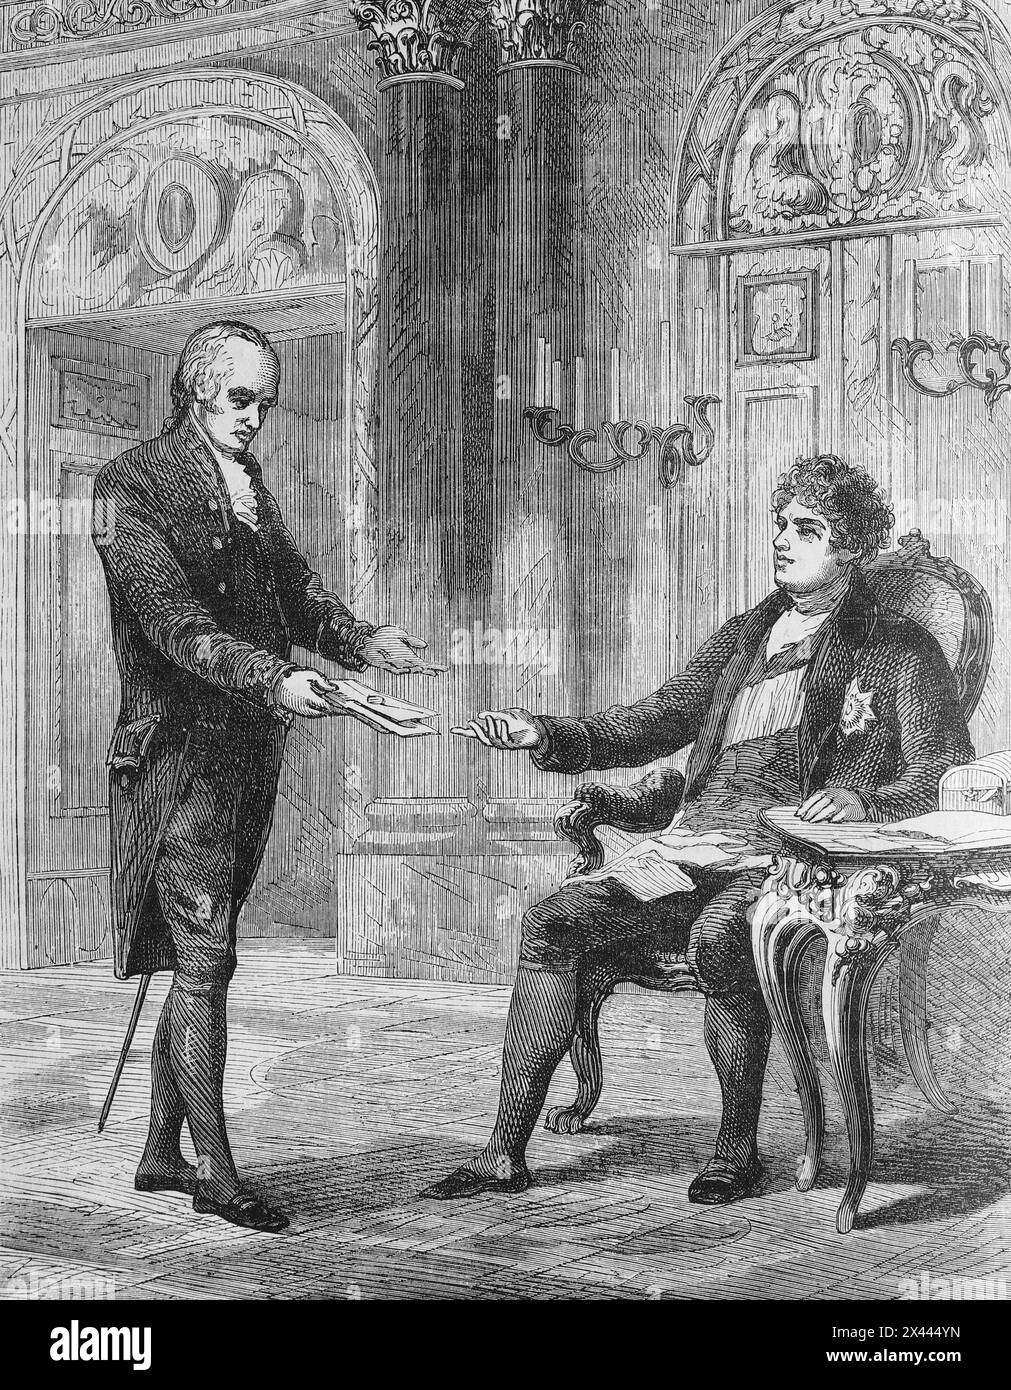 George Canning ricevette la nomina a primo ministro da re Giorgio IV, 1827. Illustrazione tratta dalla storia dell'Inghilterra di Cassell, vol VII. New Edition pubblicata circa 1873-5. Foto Stock